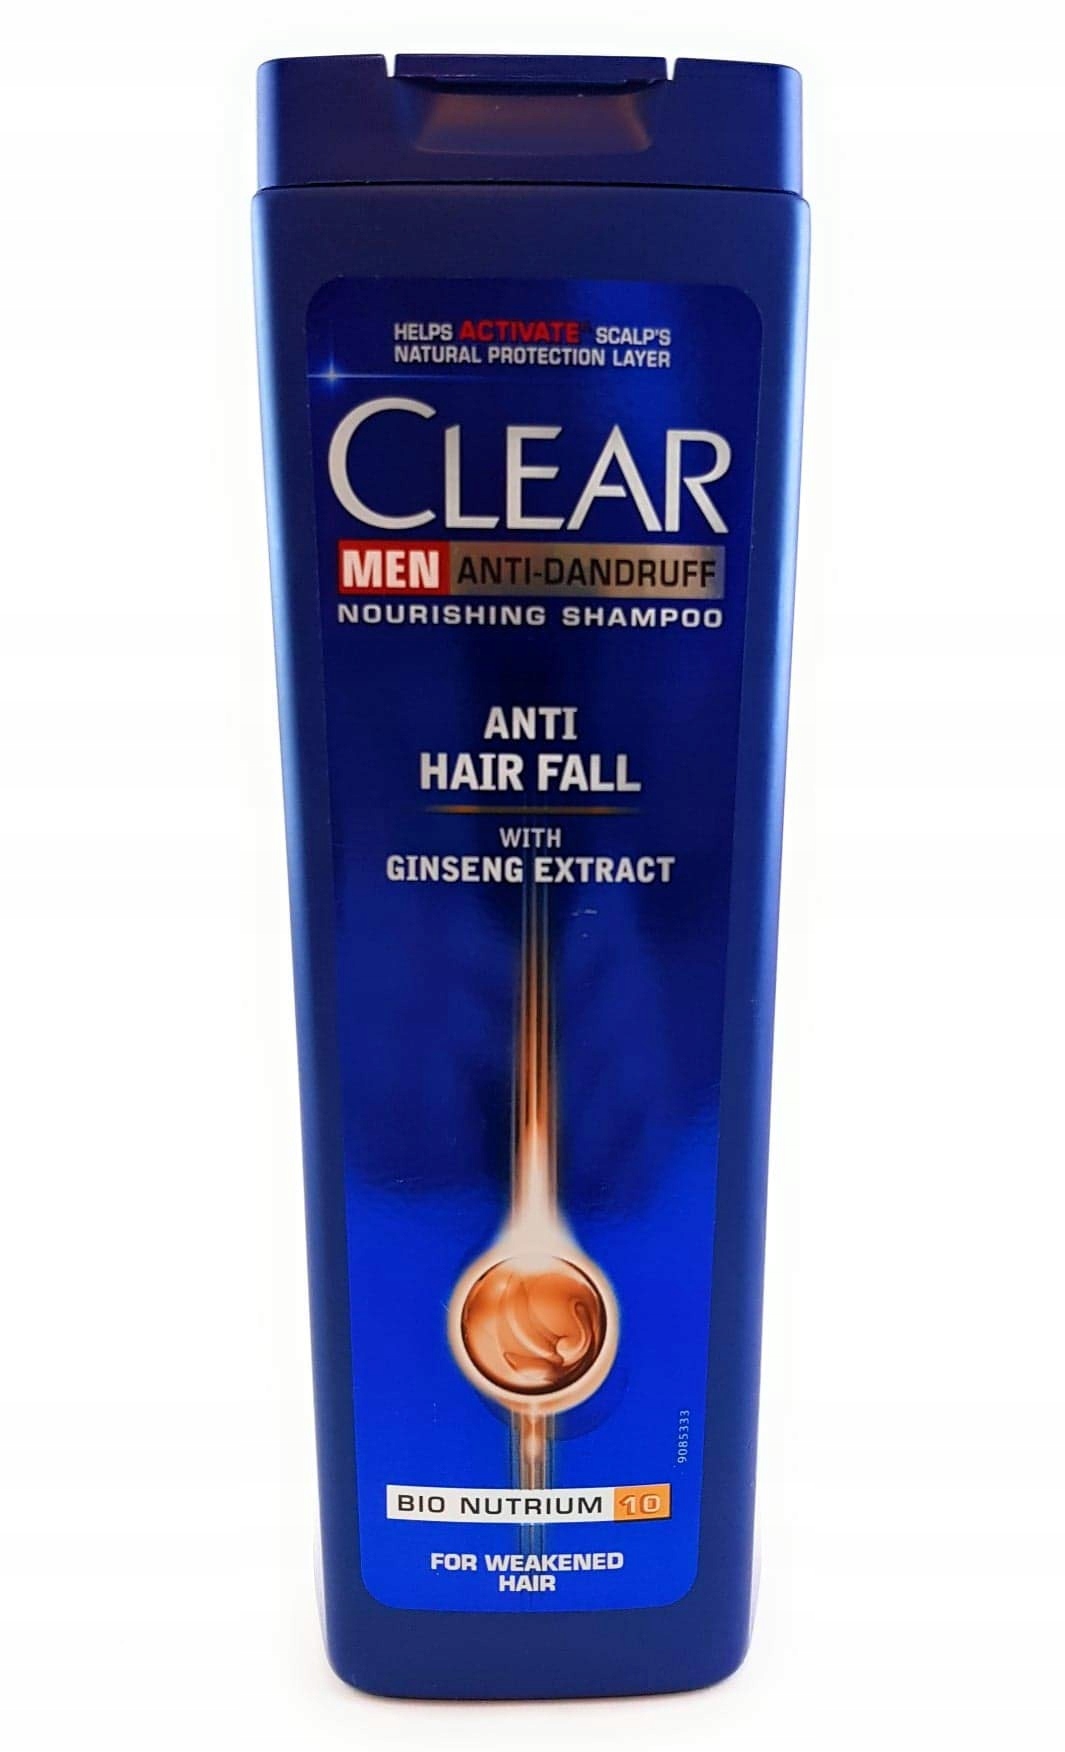 dlaczego wycofano szampon clear